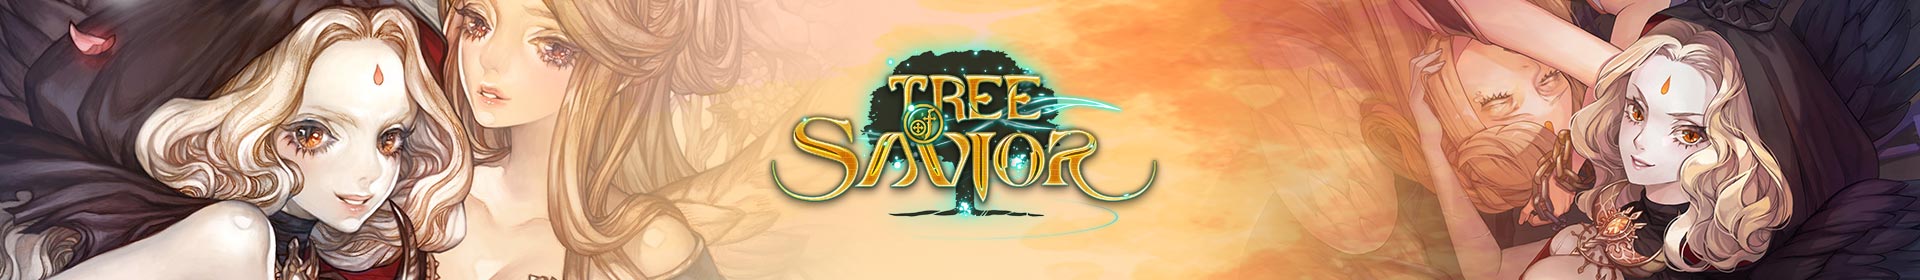 Tree of Savior Silver